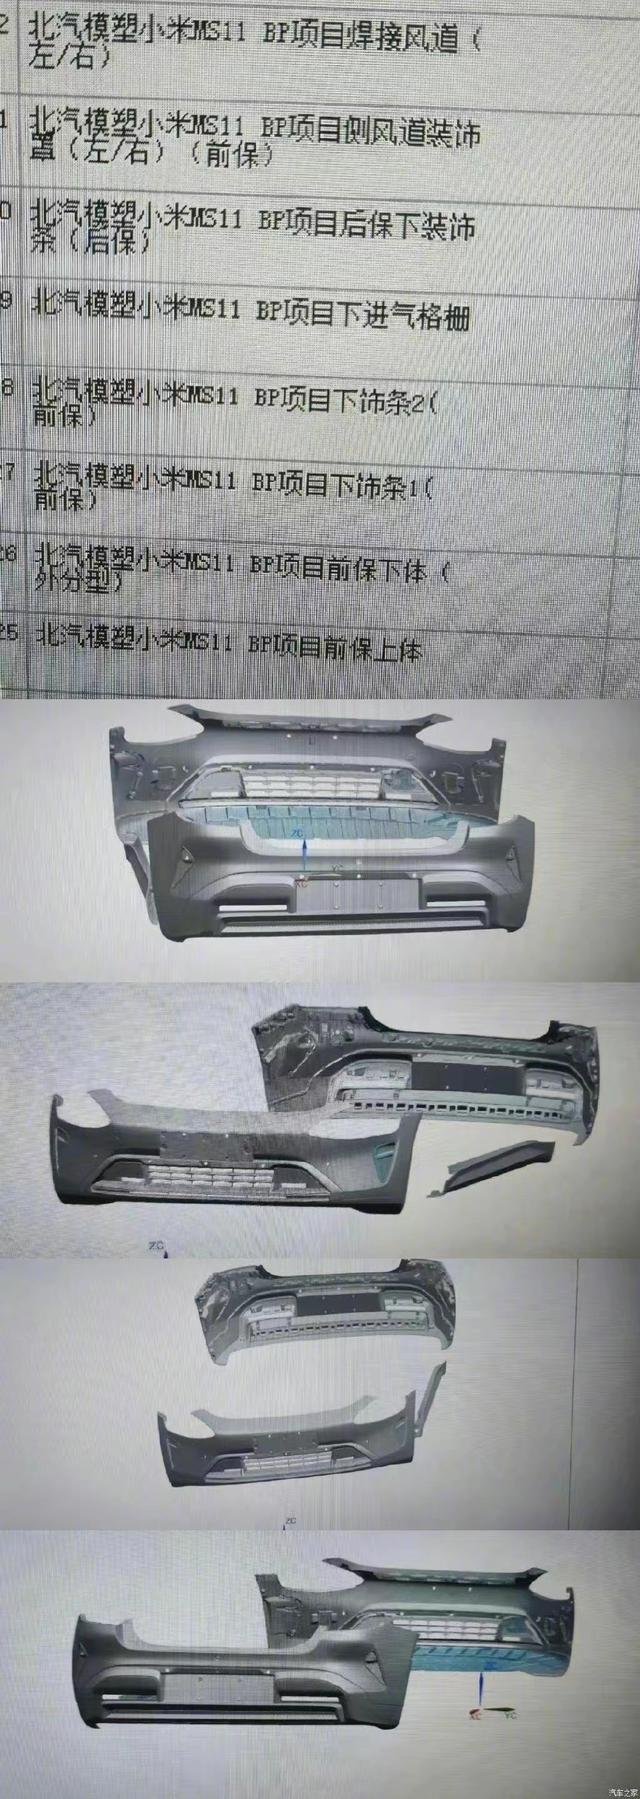 샤오미가 2024년 출시를 앞두고 있는 전기차의 외장 사진 일부 중국 매체 캡처